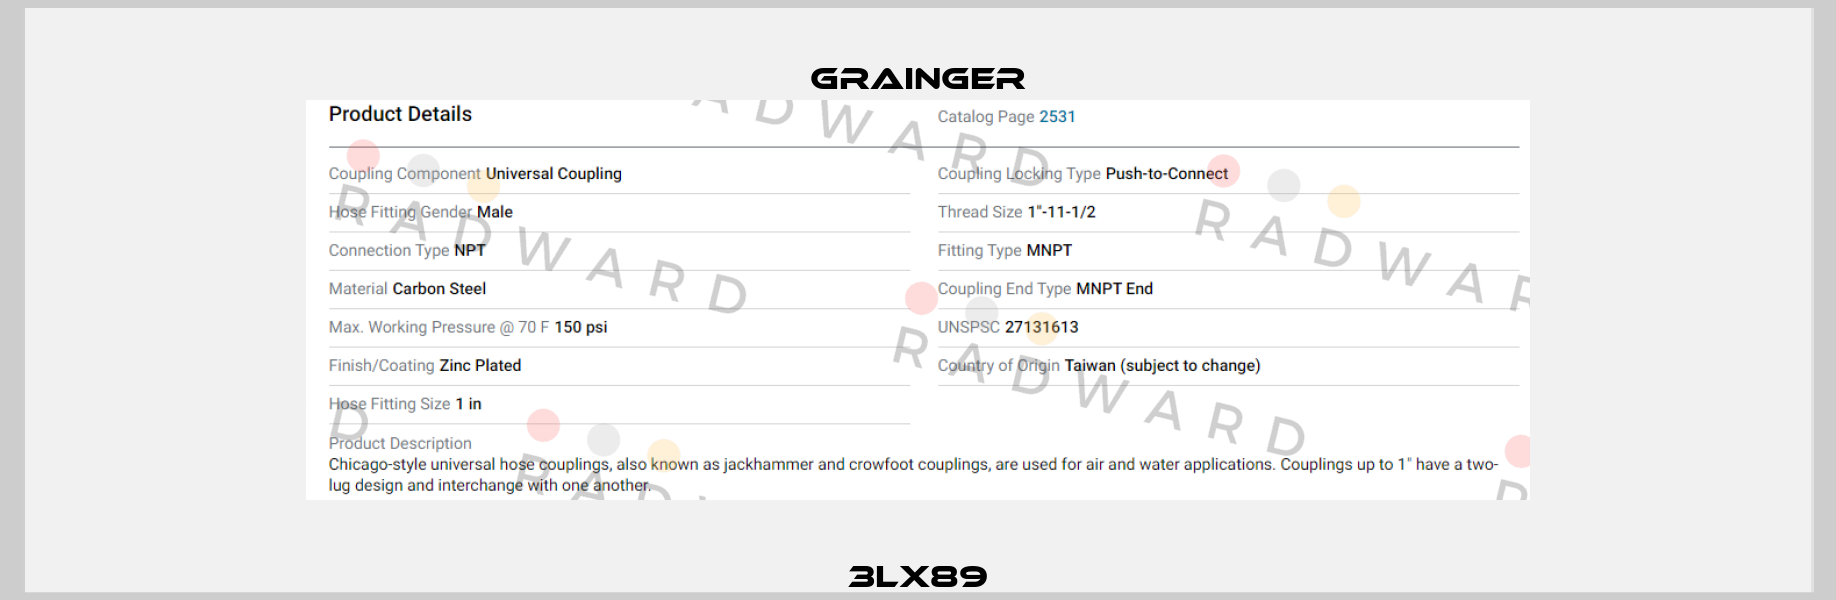 3LX89 Grainger